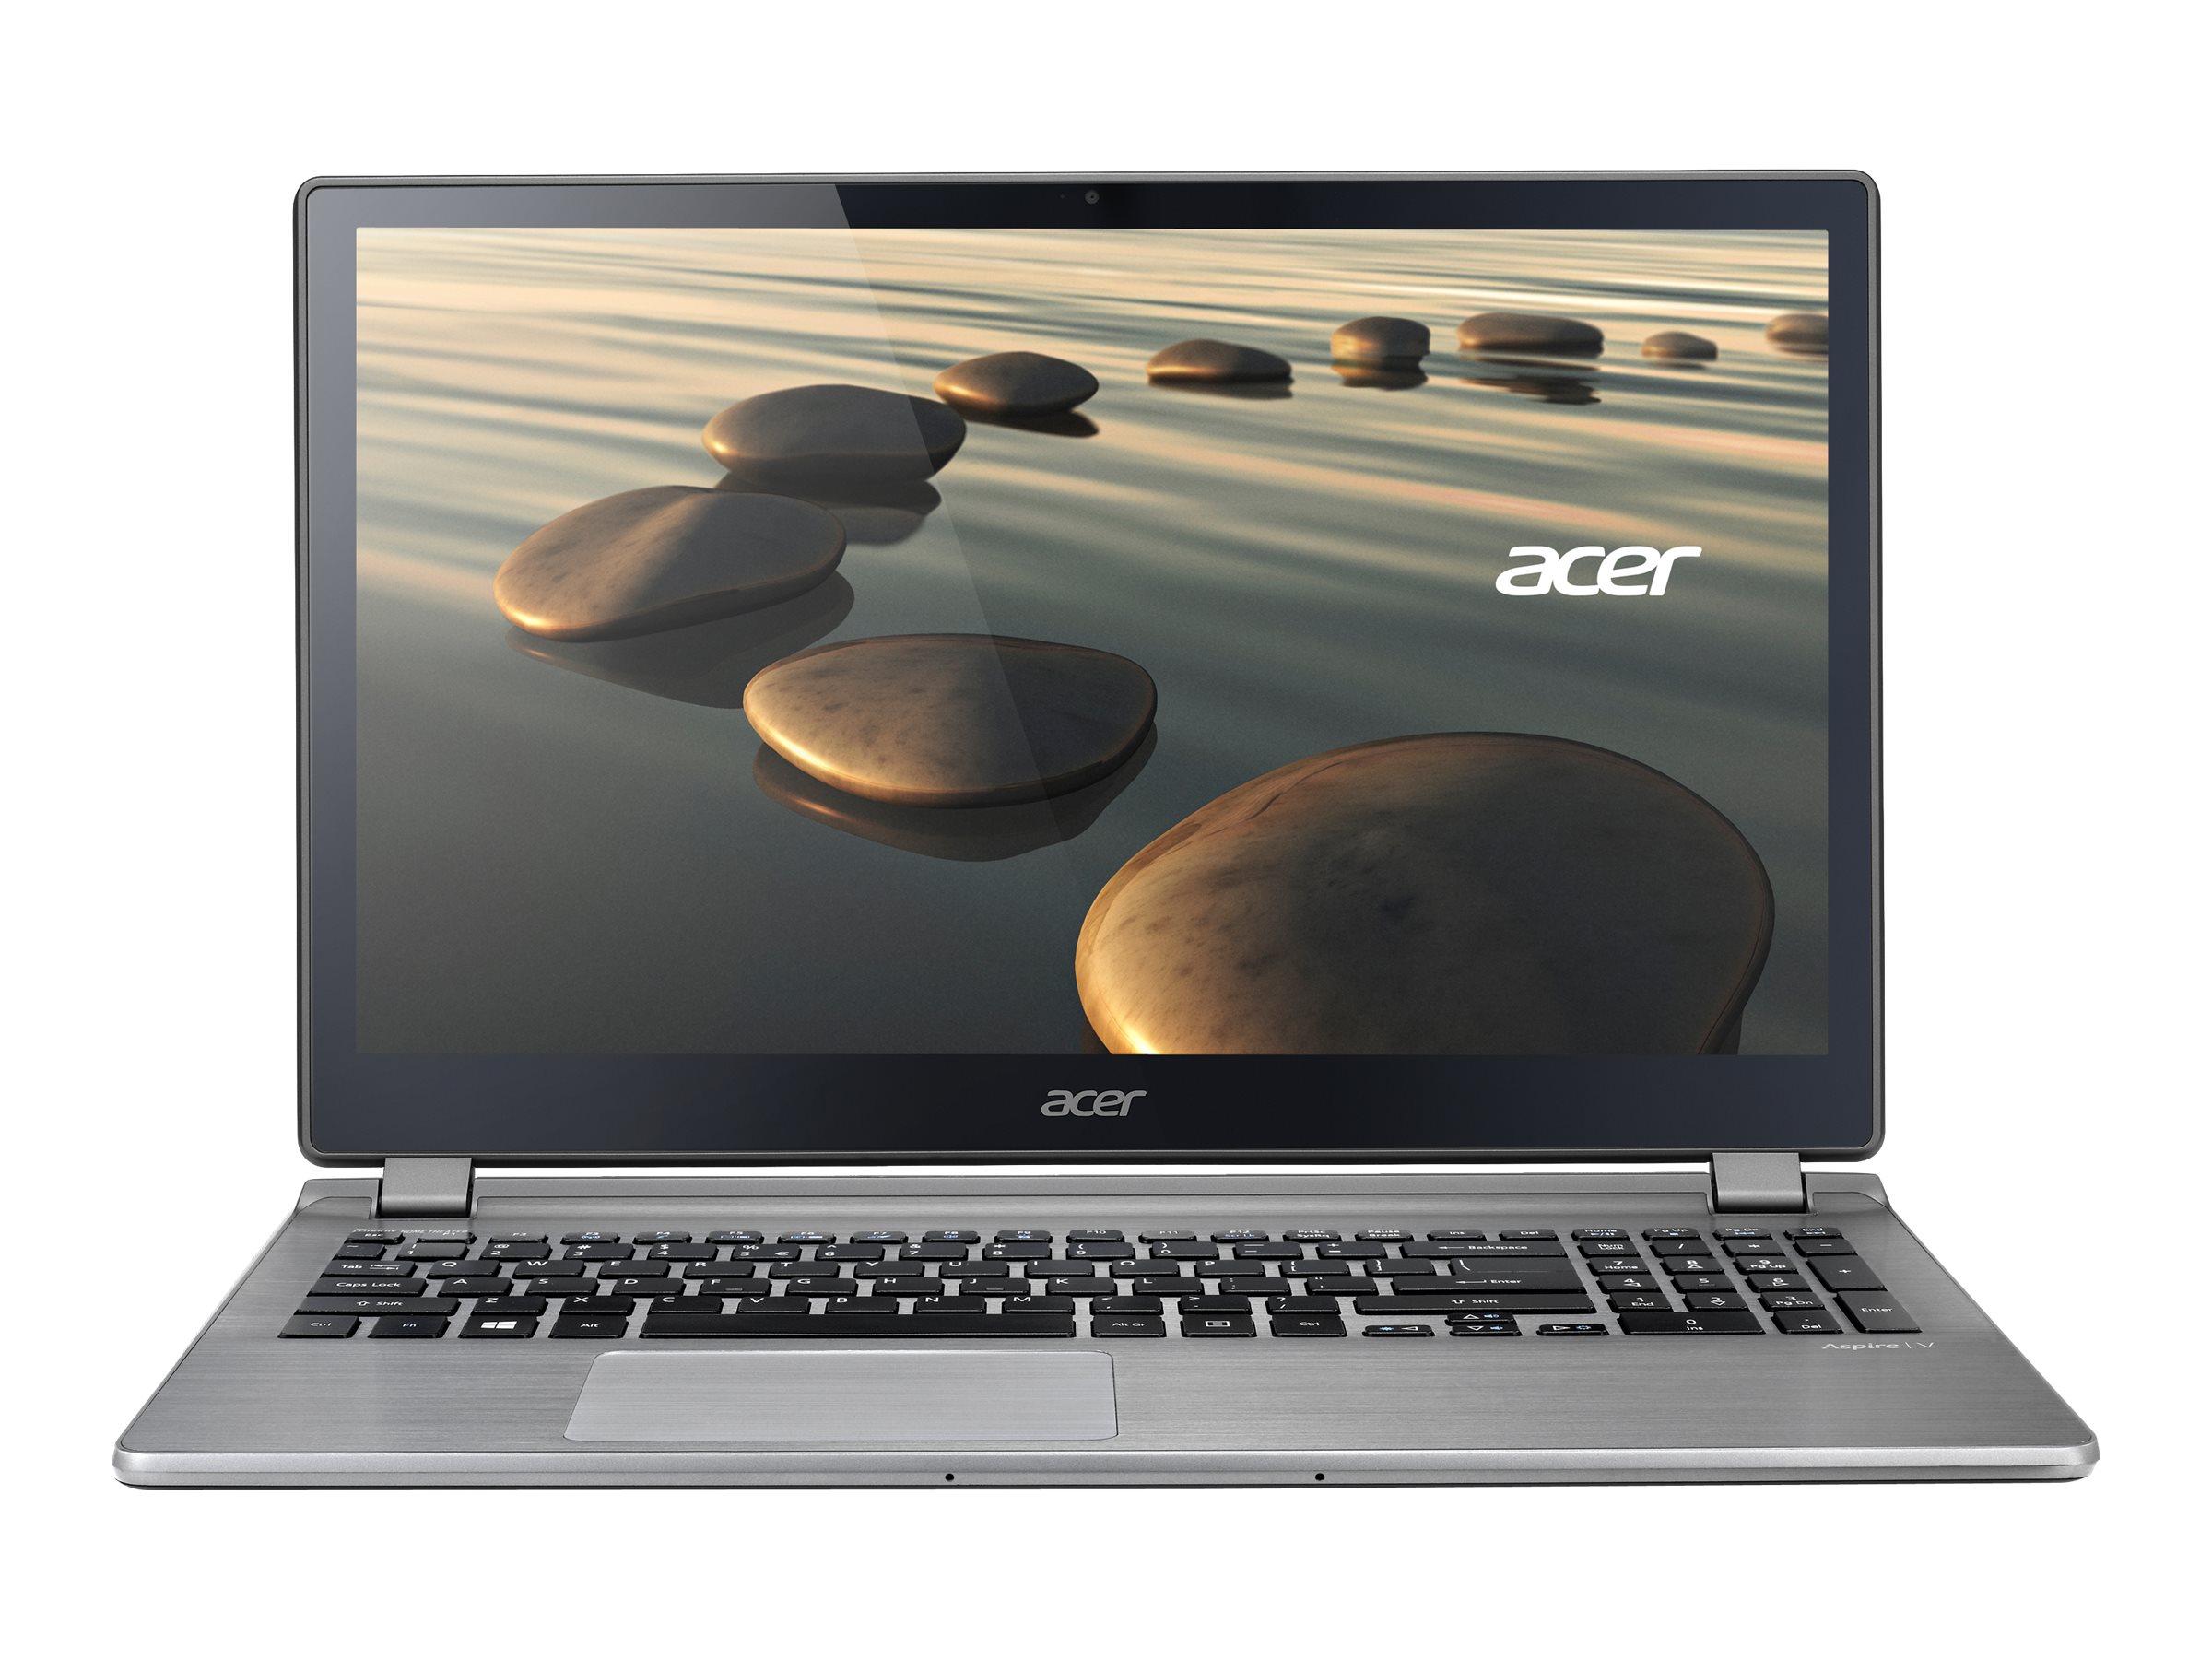 Acer Aspire V5 (573P)